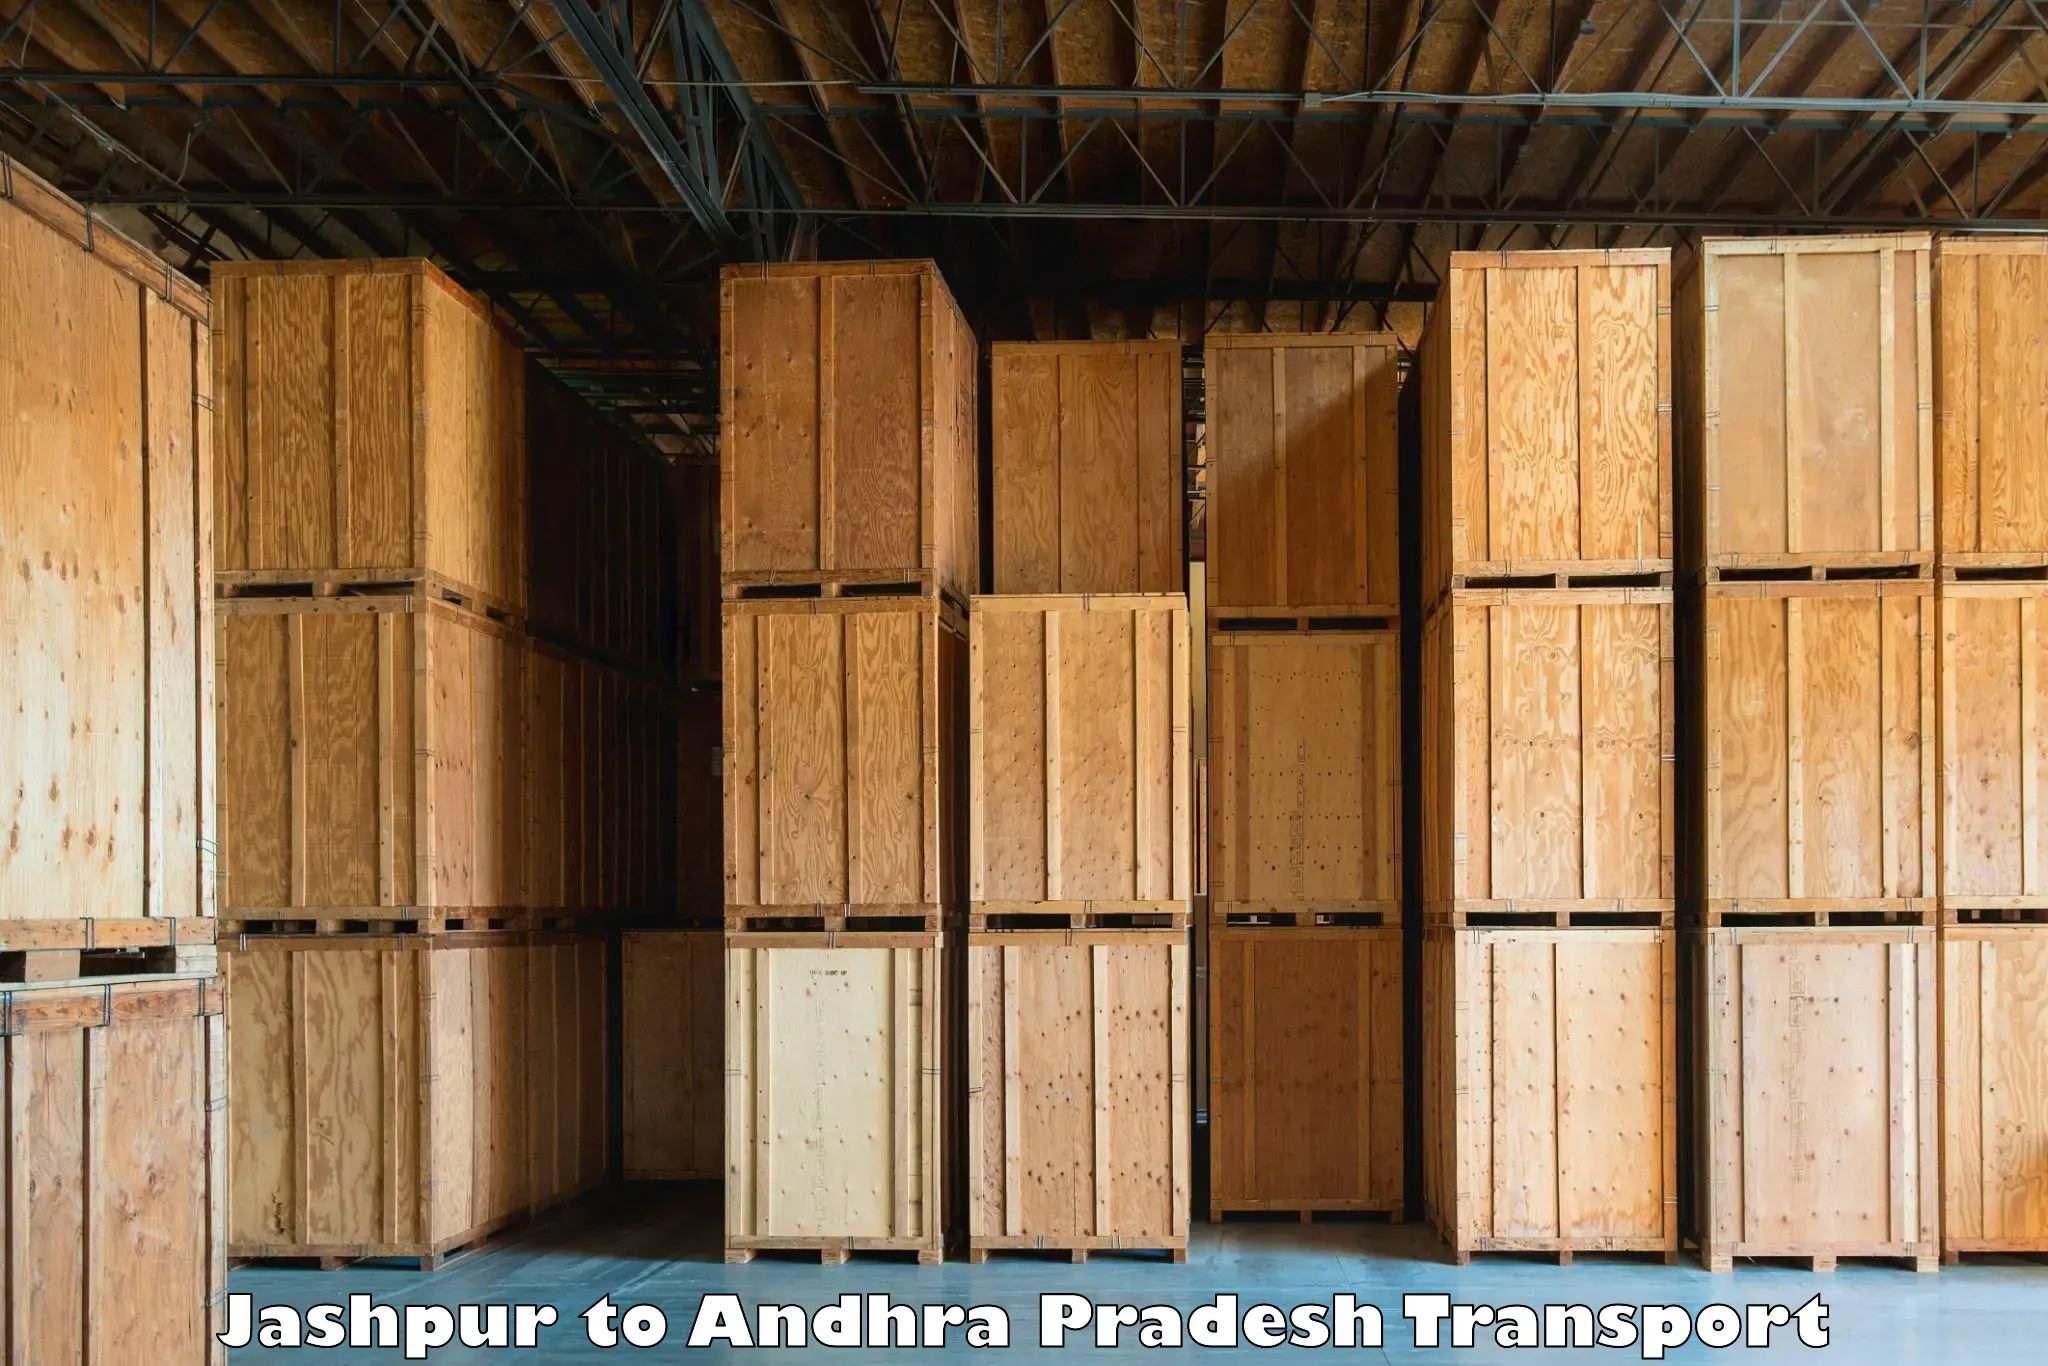 Cargo train transport services Jashpur to Ichchapuram